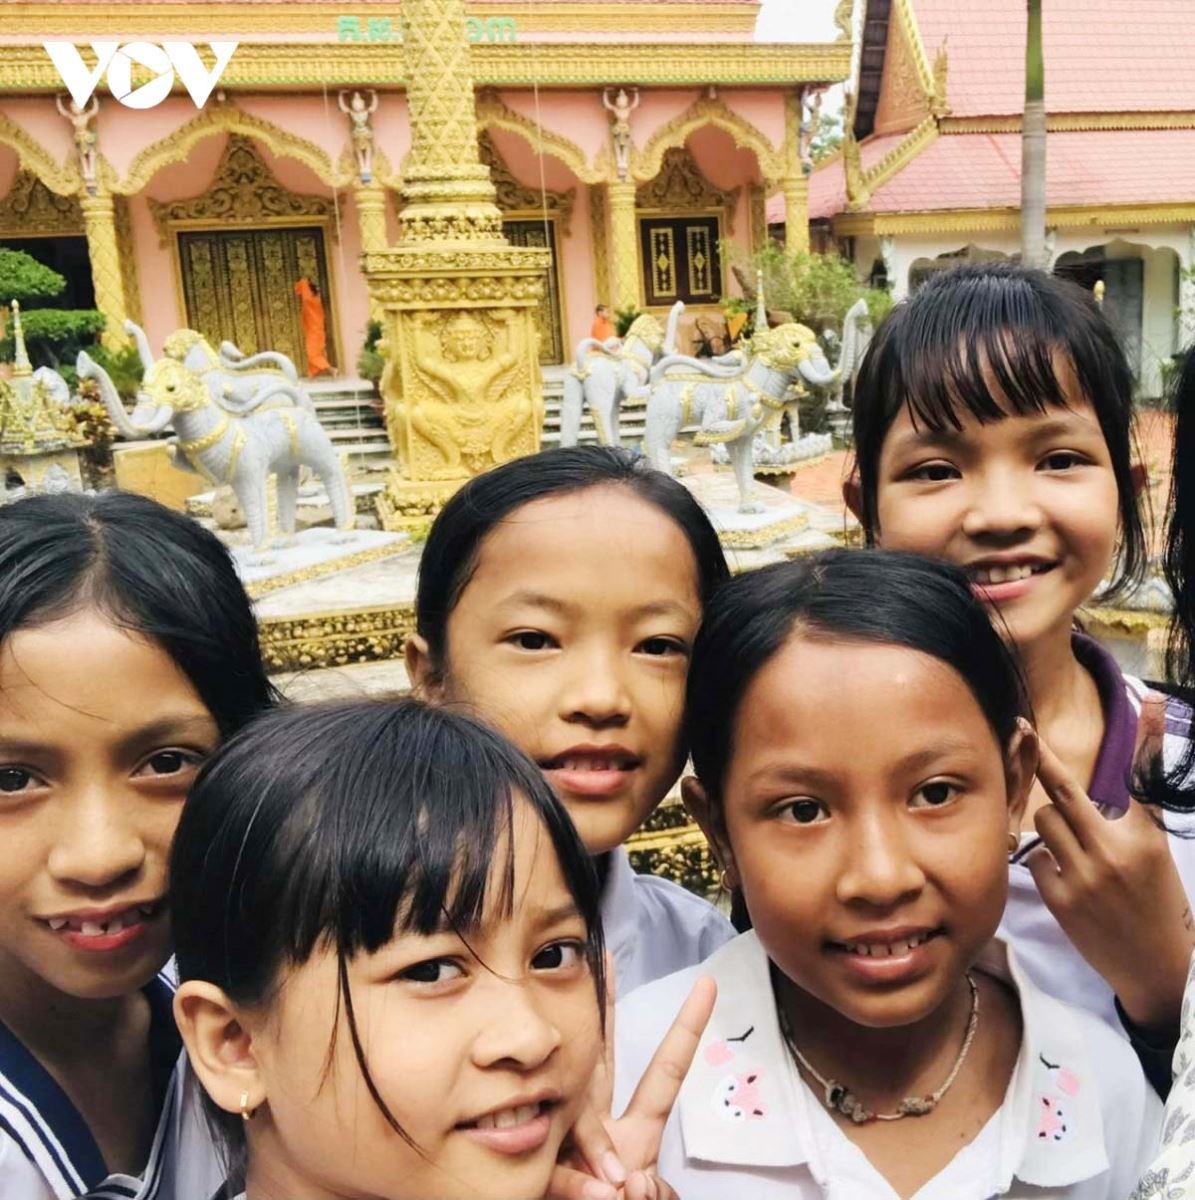 Trẻ em người Khmer ở Trà Vinh được vào chùa học chữ để gìn giữ bản sắc văn hóa của dân tộc mình.